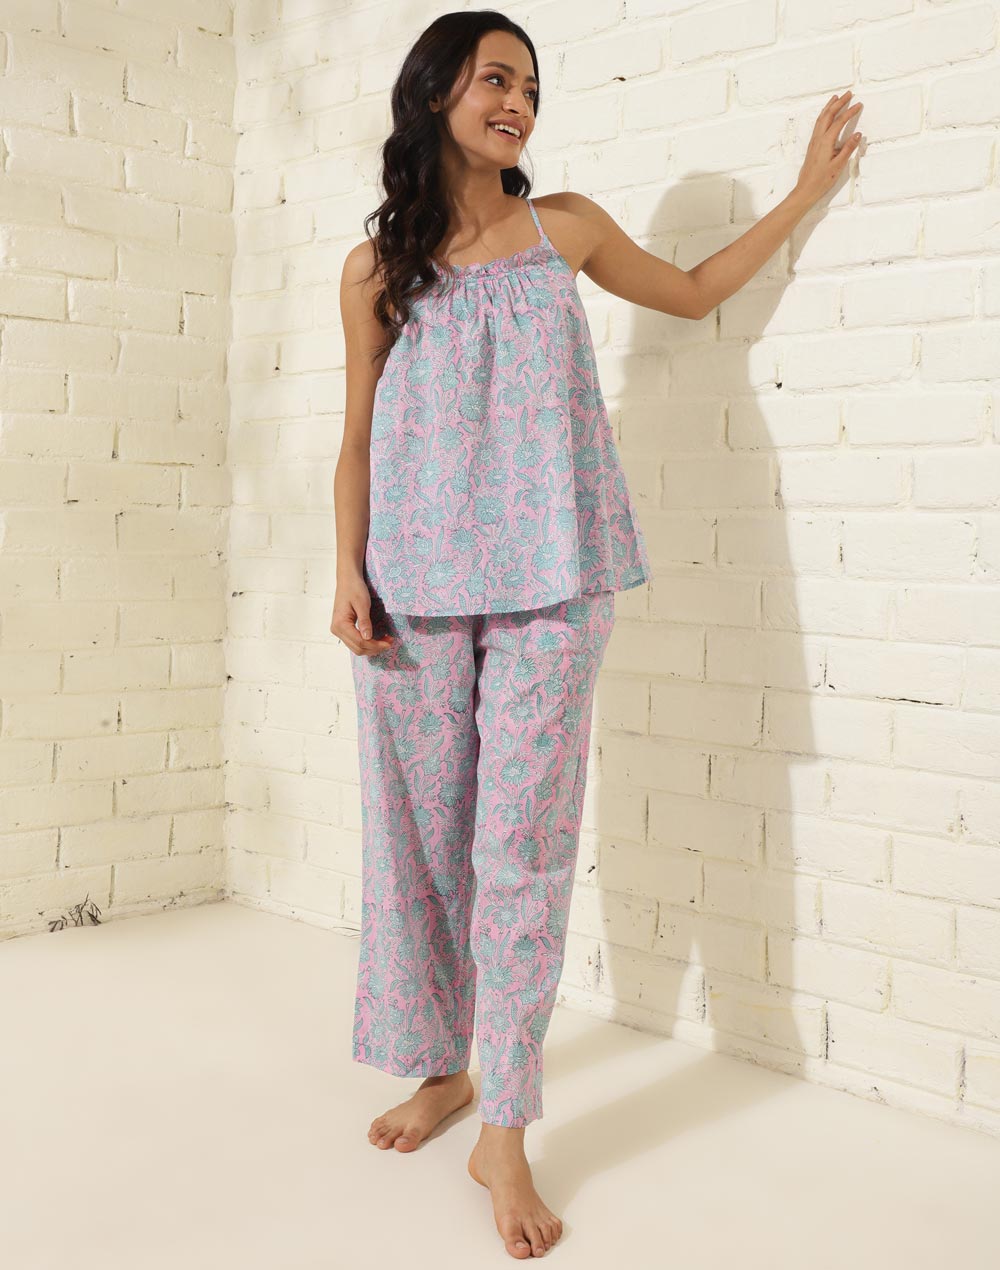 Buy Women's Sleepwear, Night wear for Women Online at Fabindia